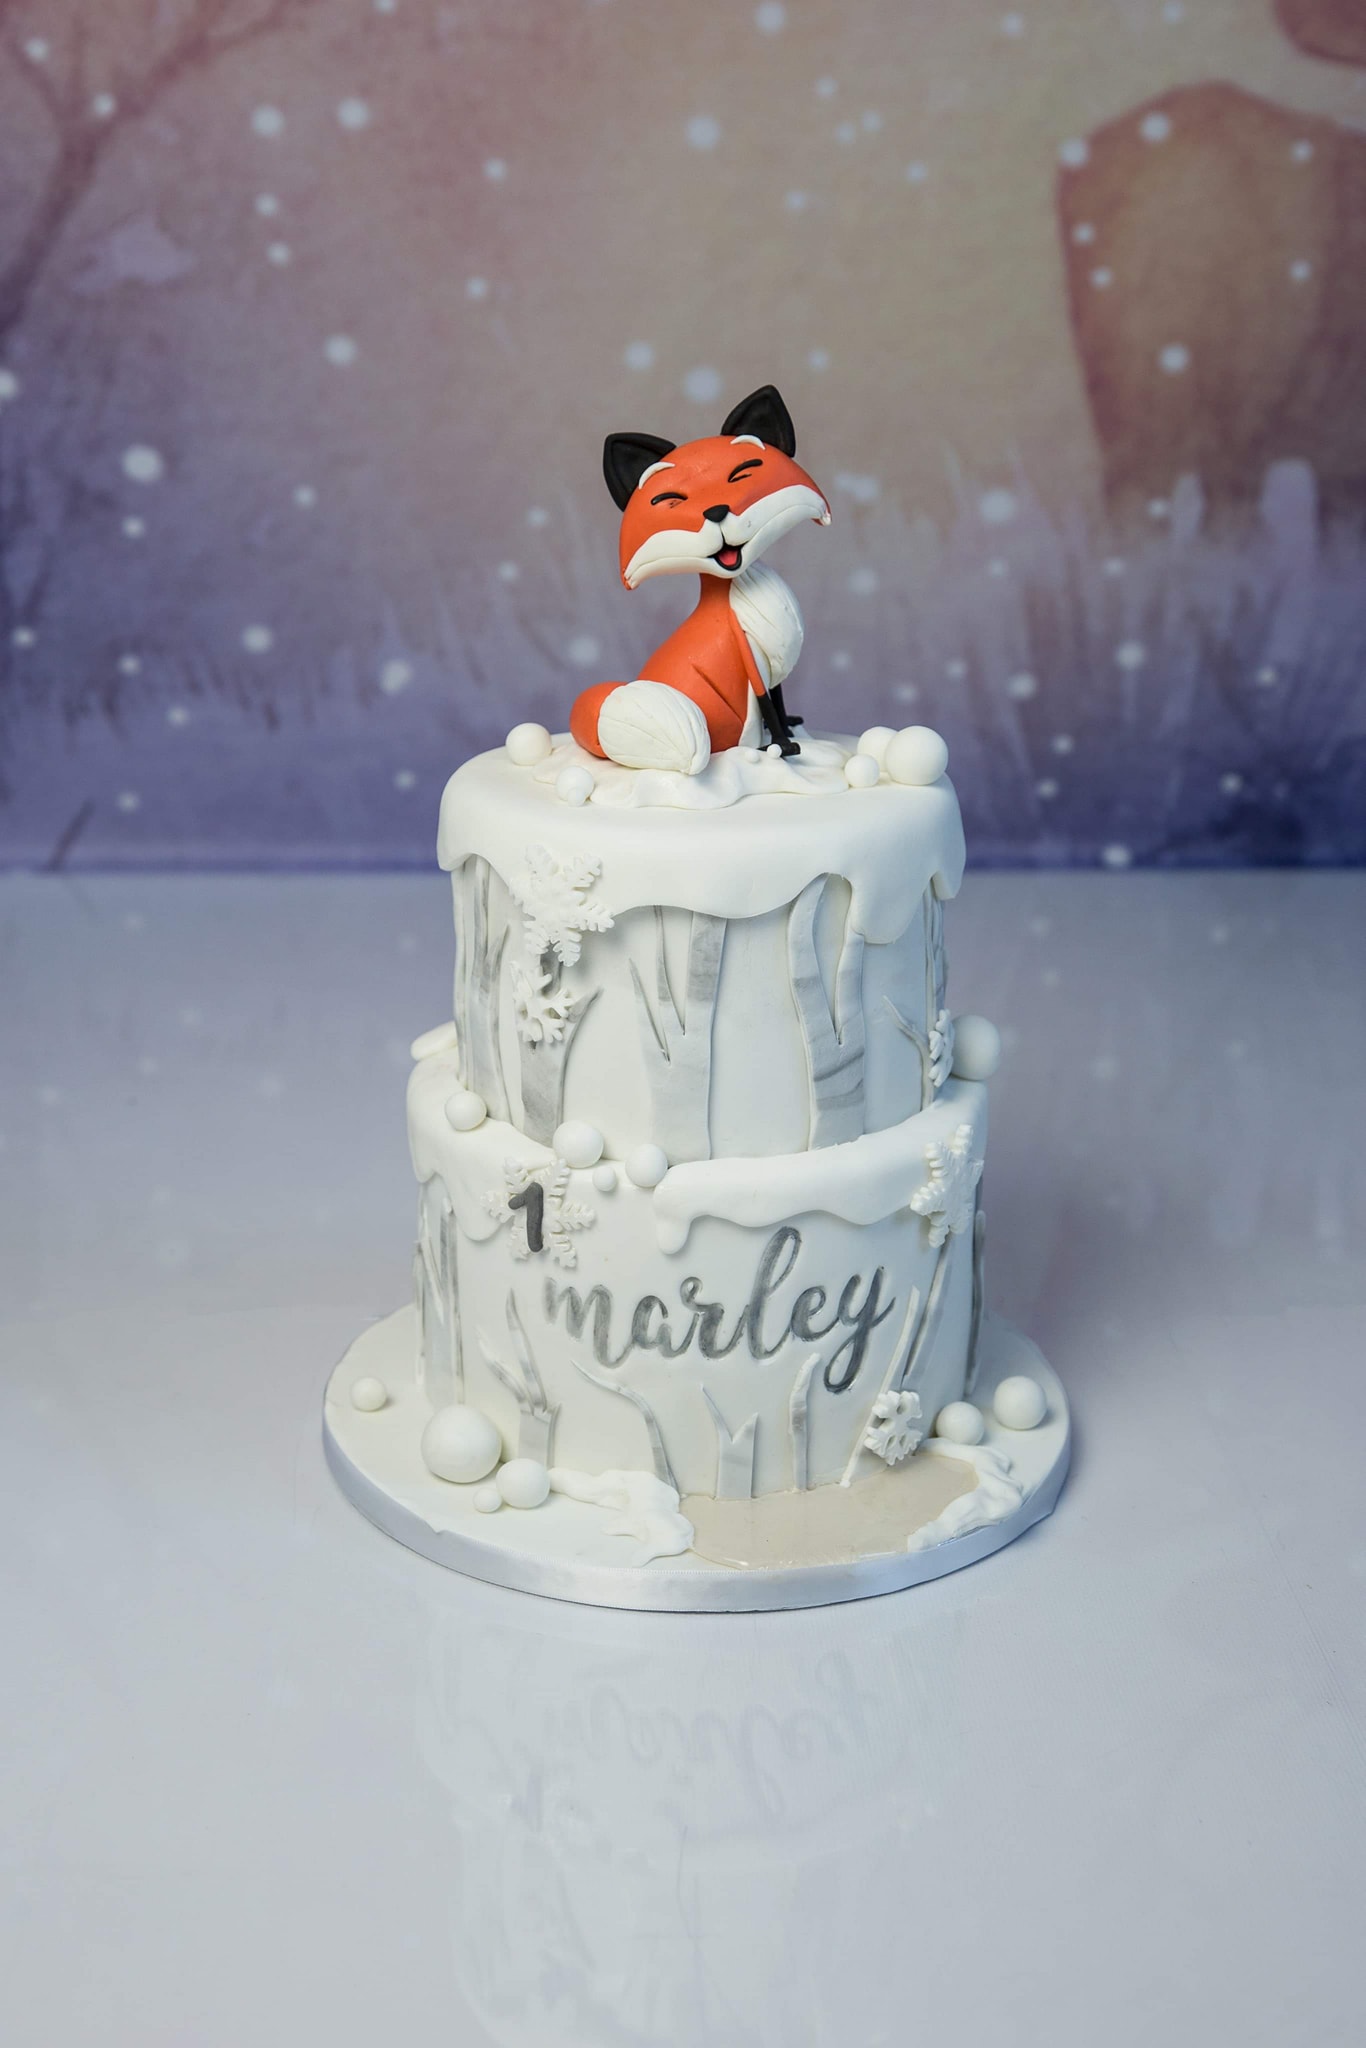 Gâteau d'anniversaire Mickey et Minnie pour Juliette 2 ans - Les